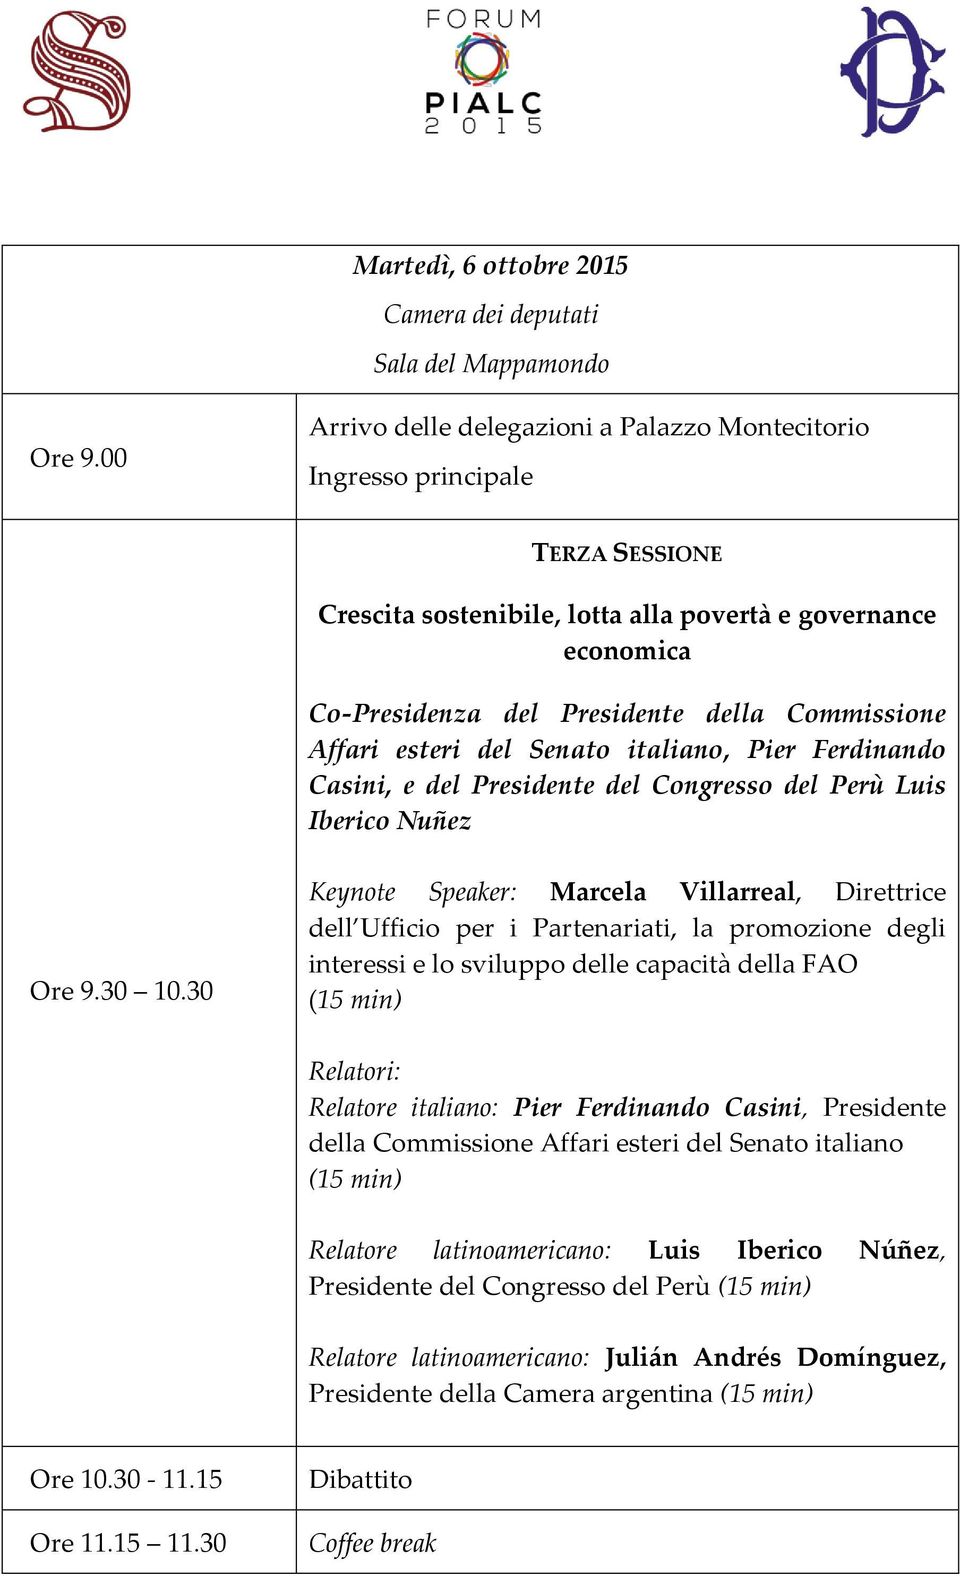 Affari esteri del Senato italiano, Pier Ferdinando Casini, e del Presidente del Congresso del Perù Luis Iberico Nuñez Ore 9.30 10.